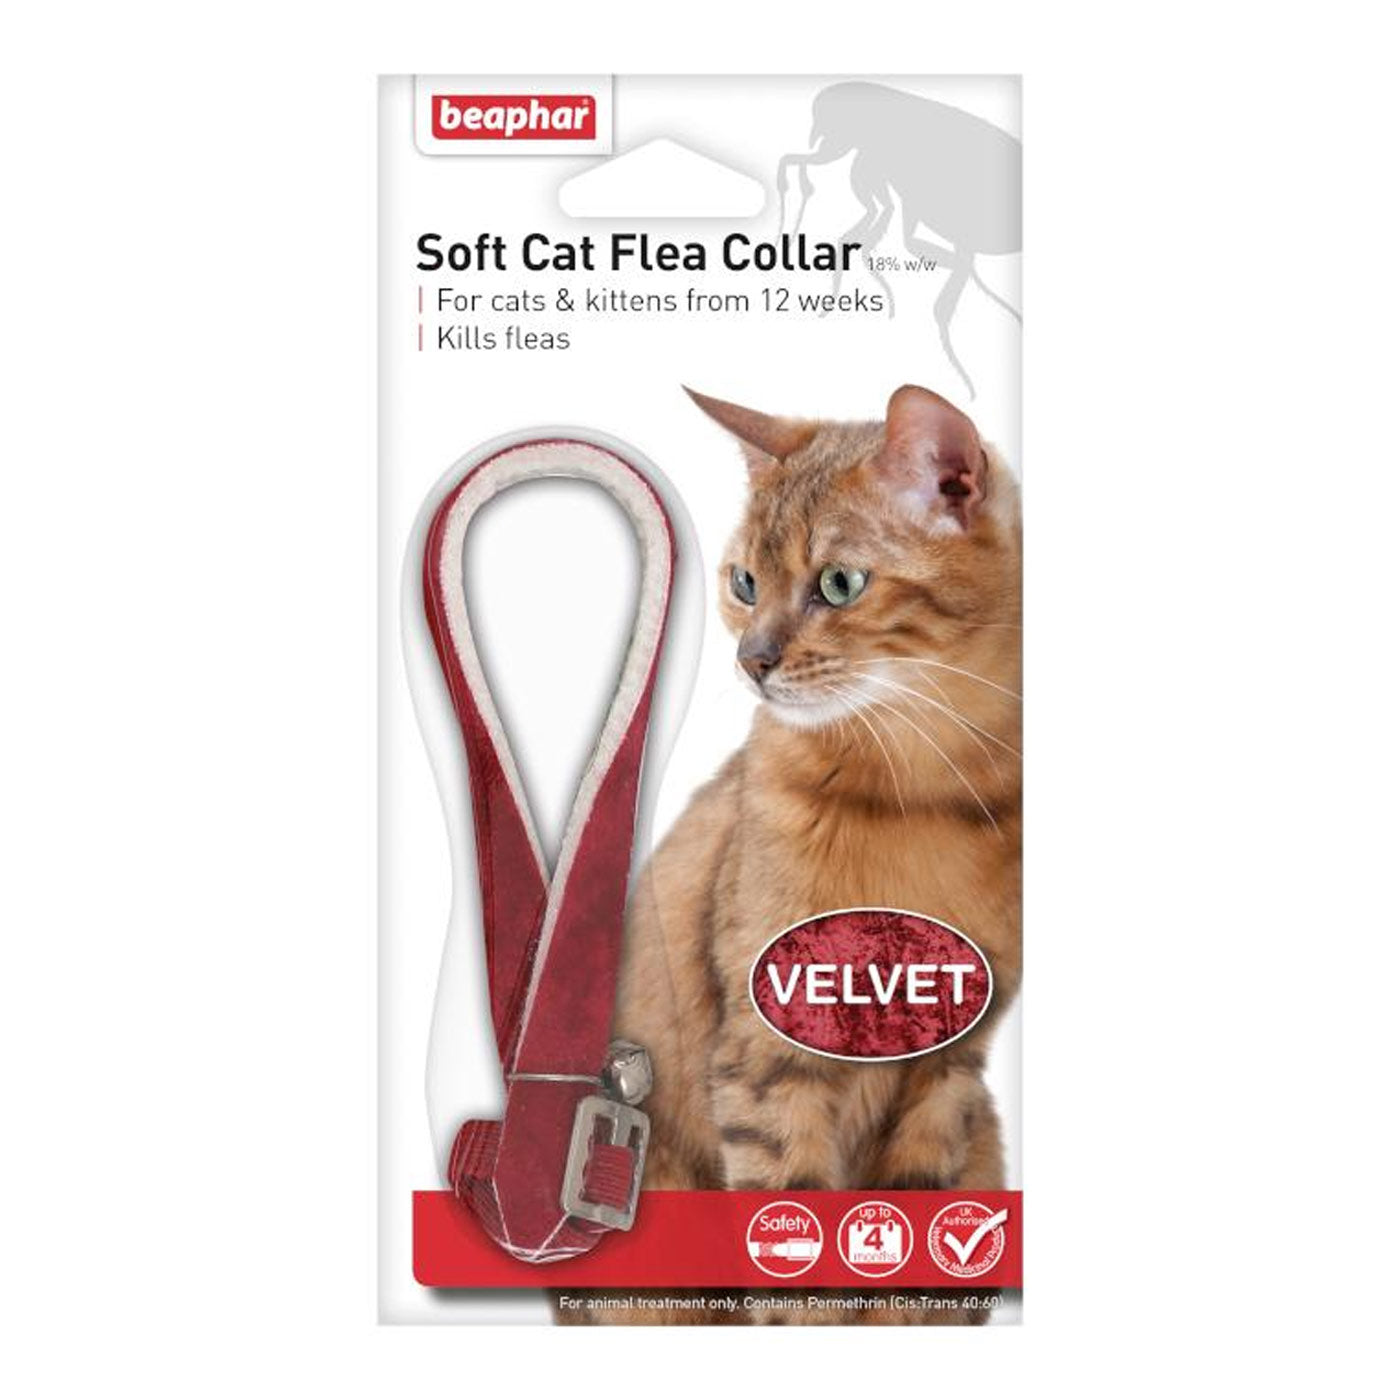 Beaphar Velvet Cat Flea Collar